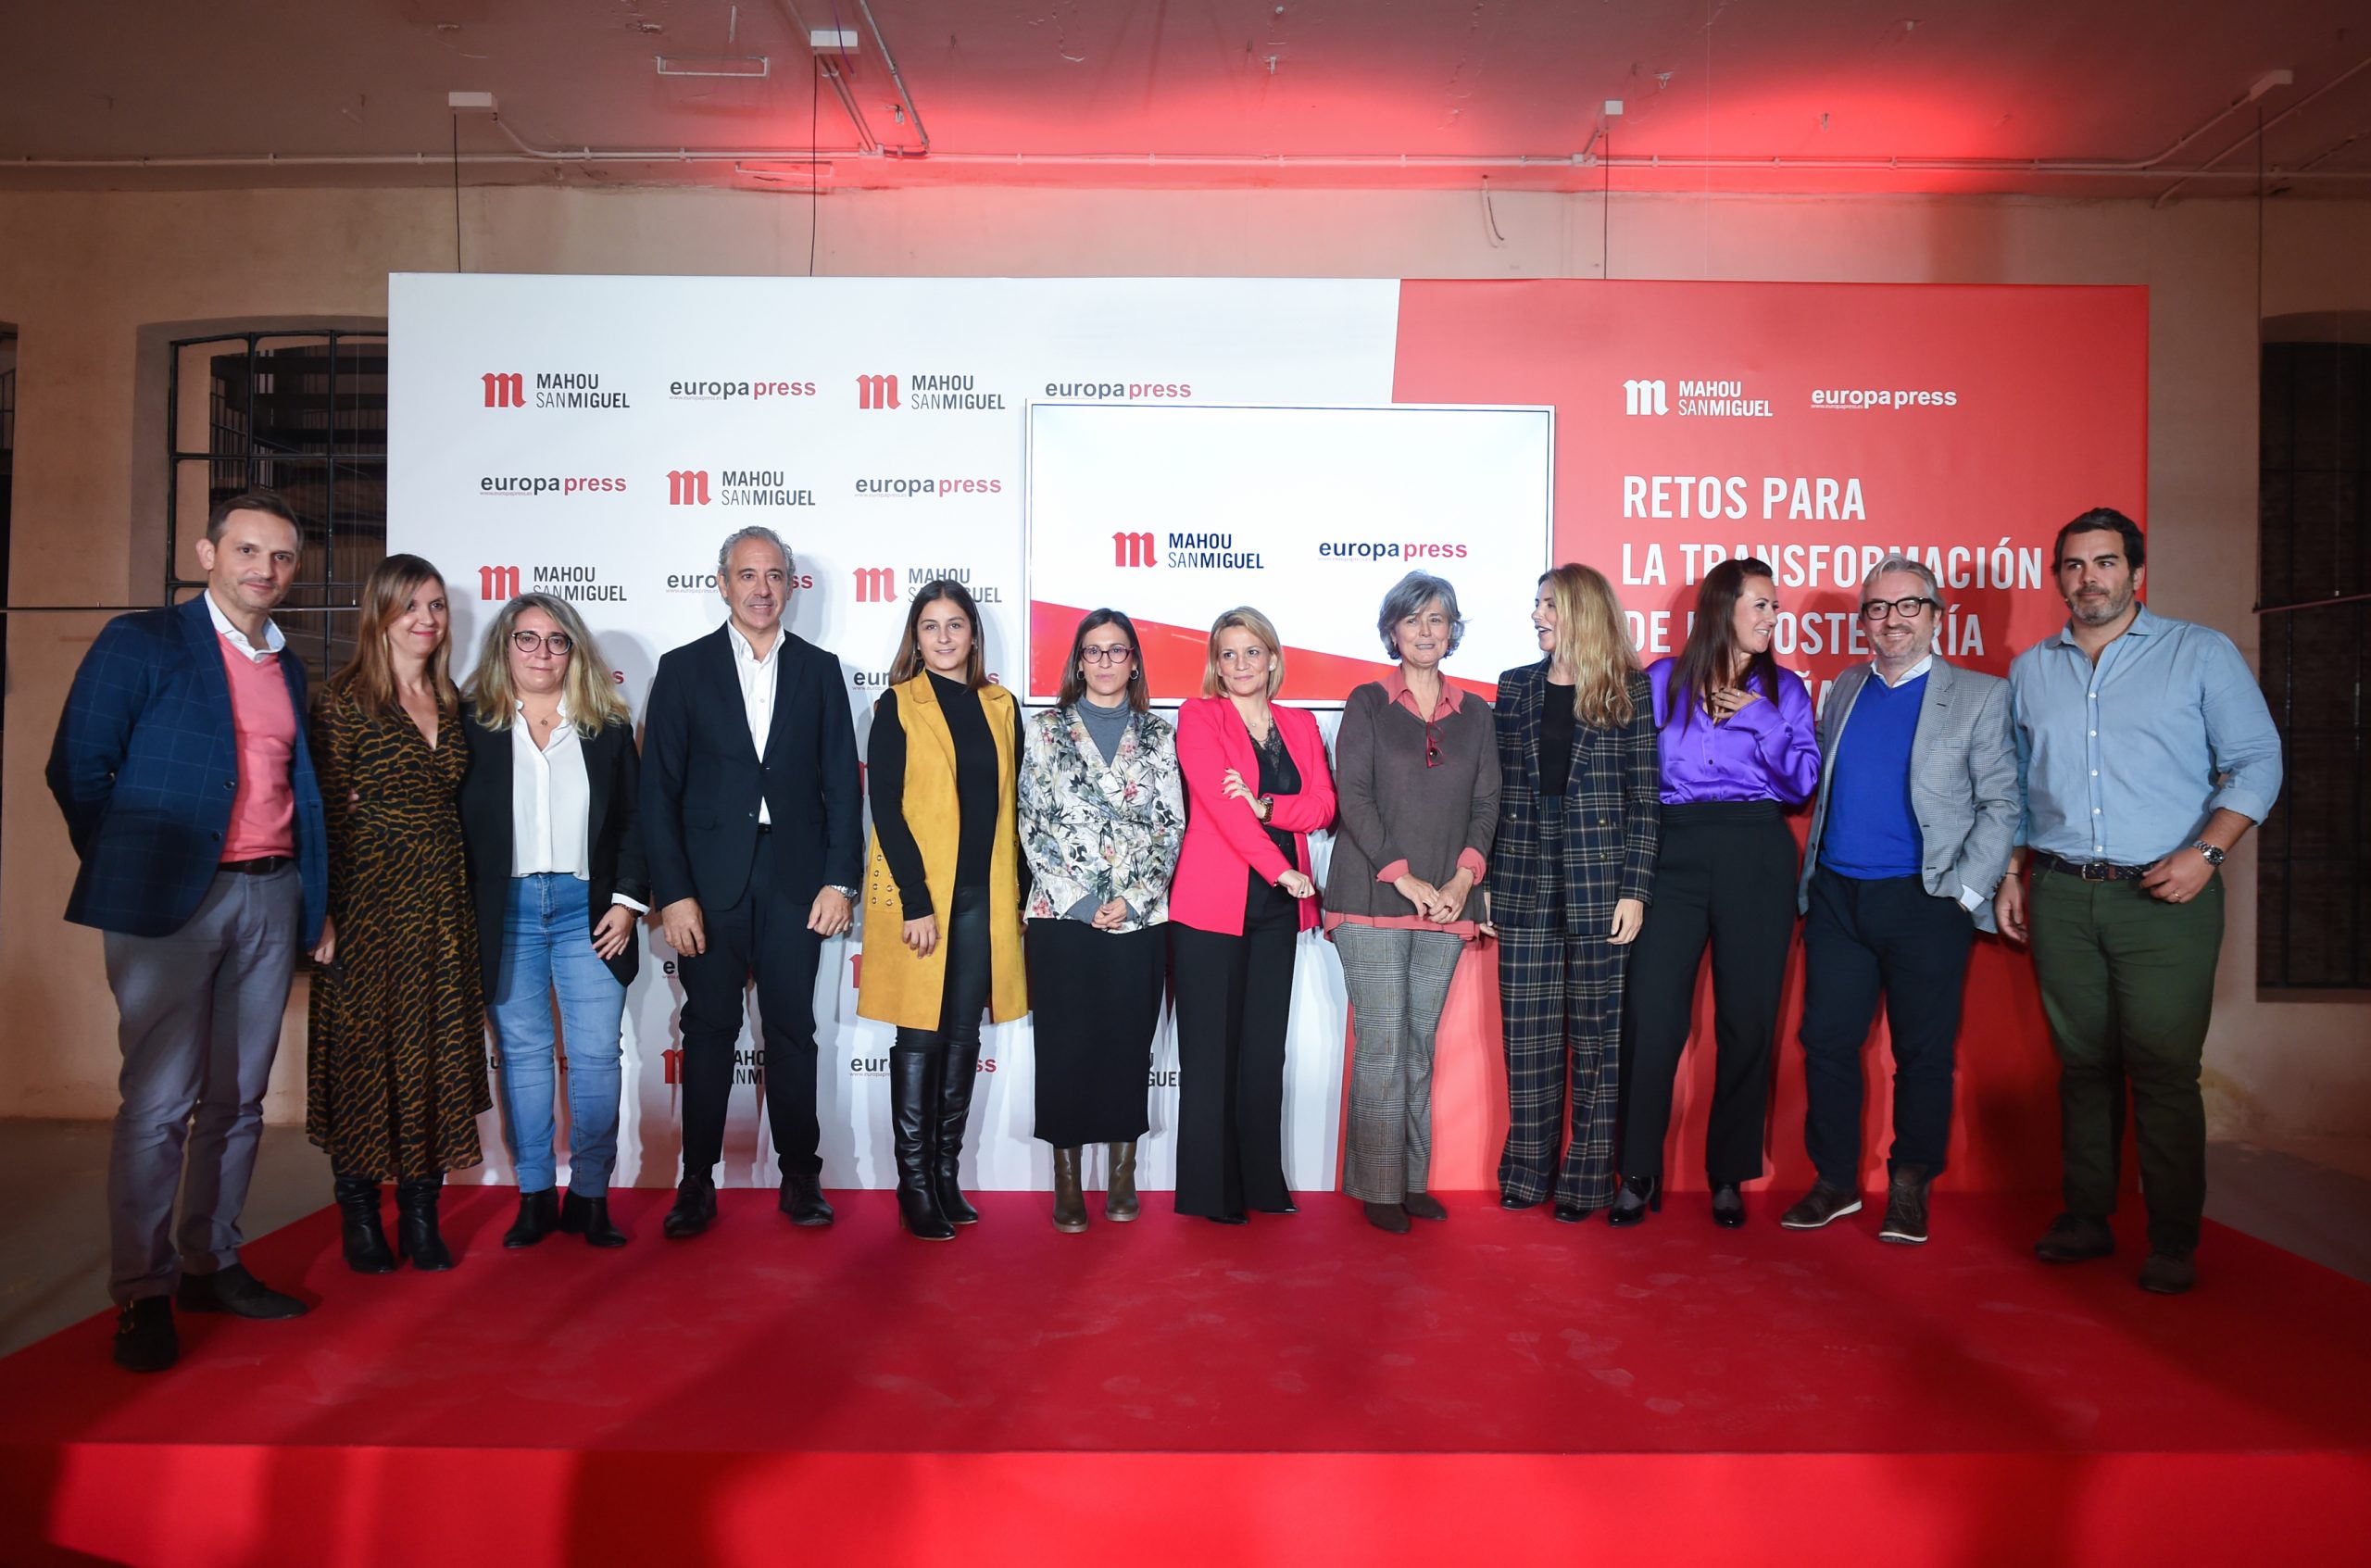 Hostelería Madrid participa en el evento Retos para la transformación de la Hostelería en España - La Viña